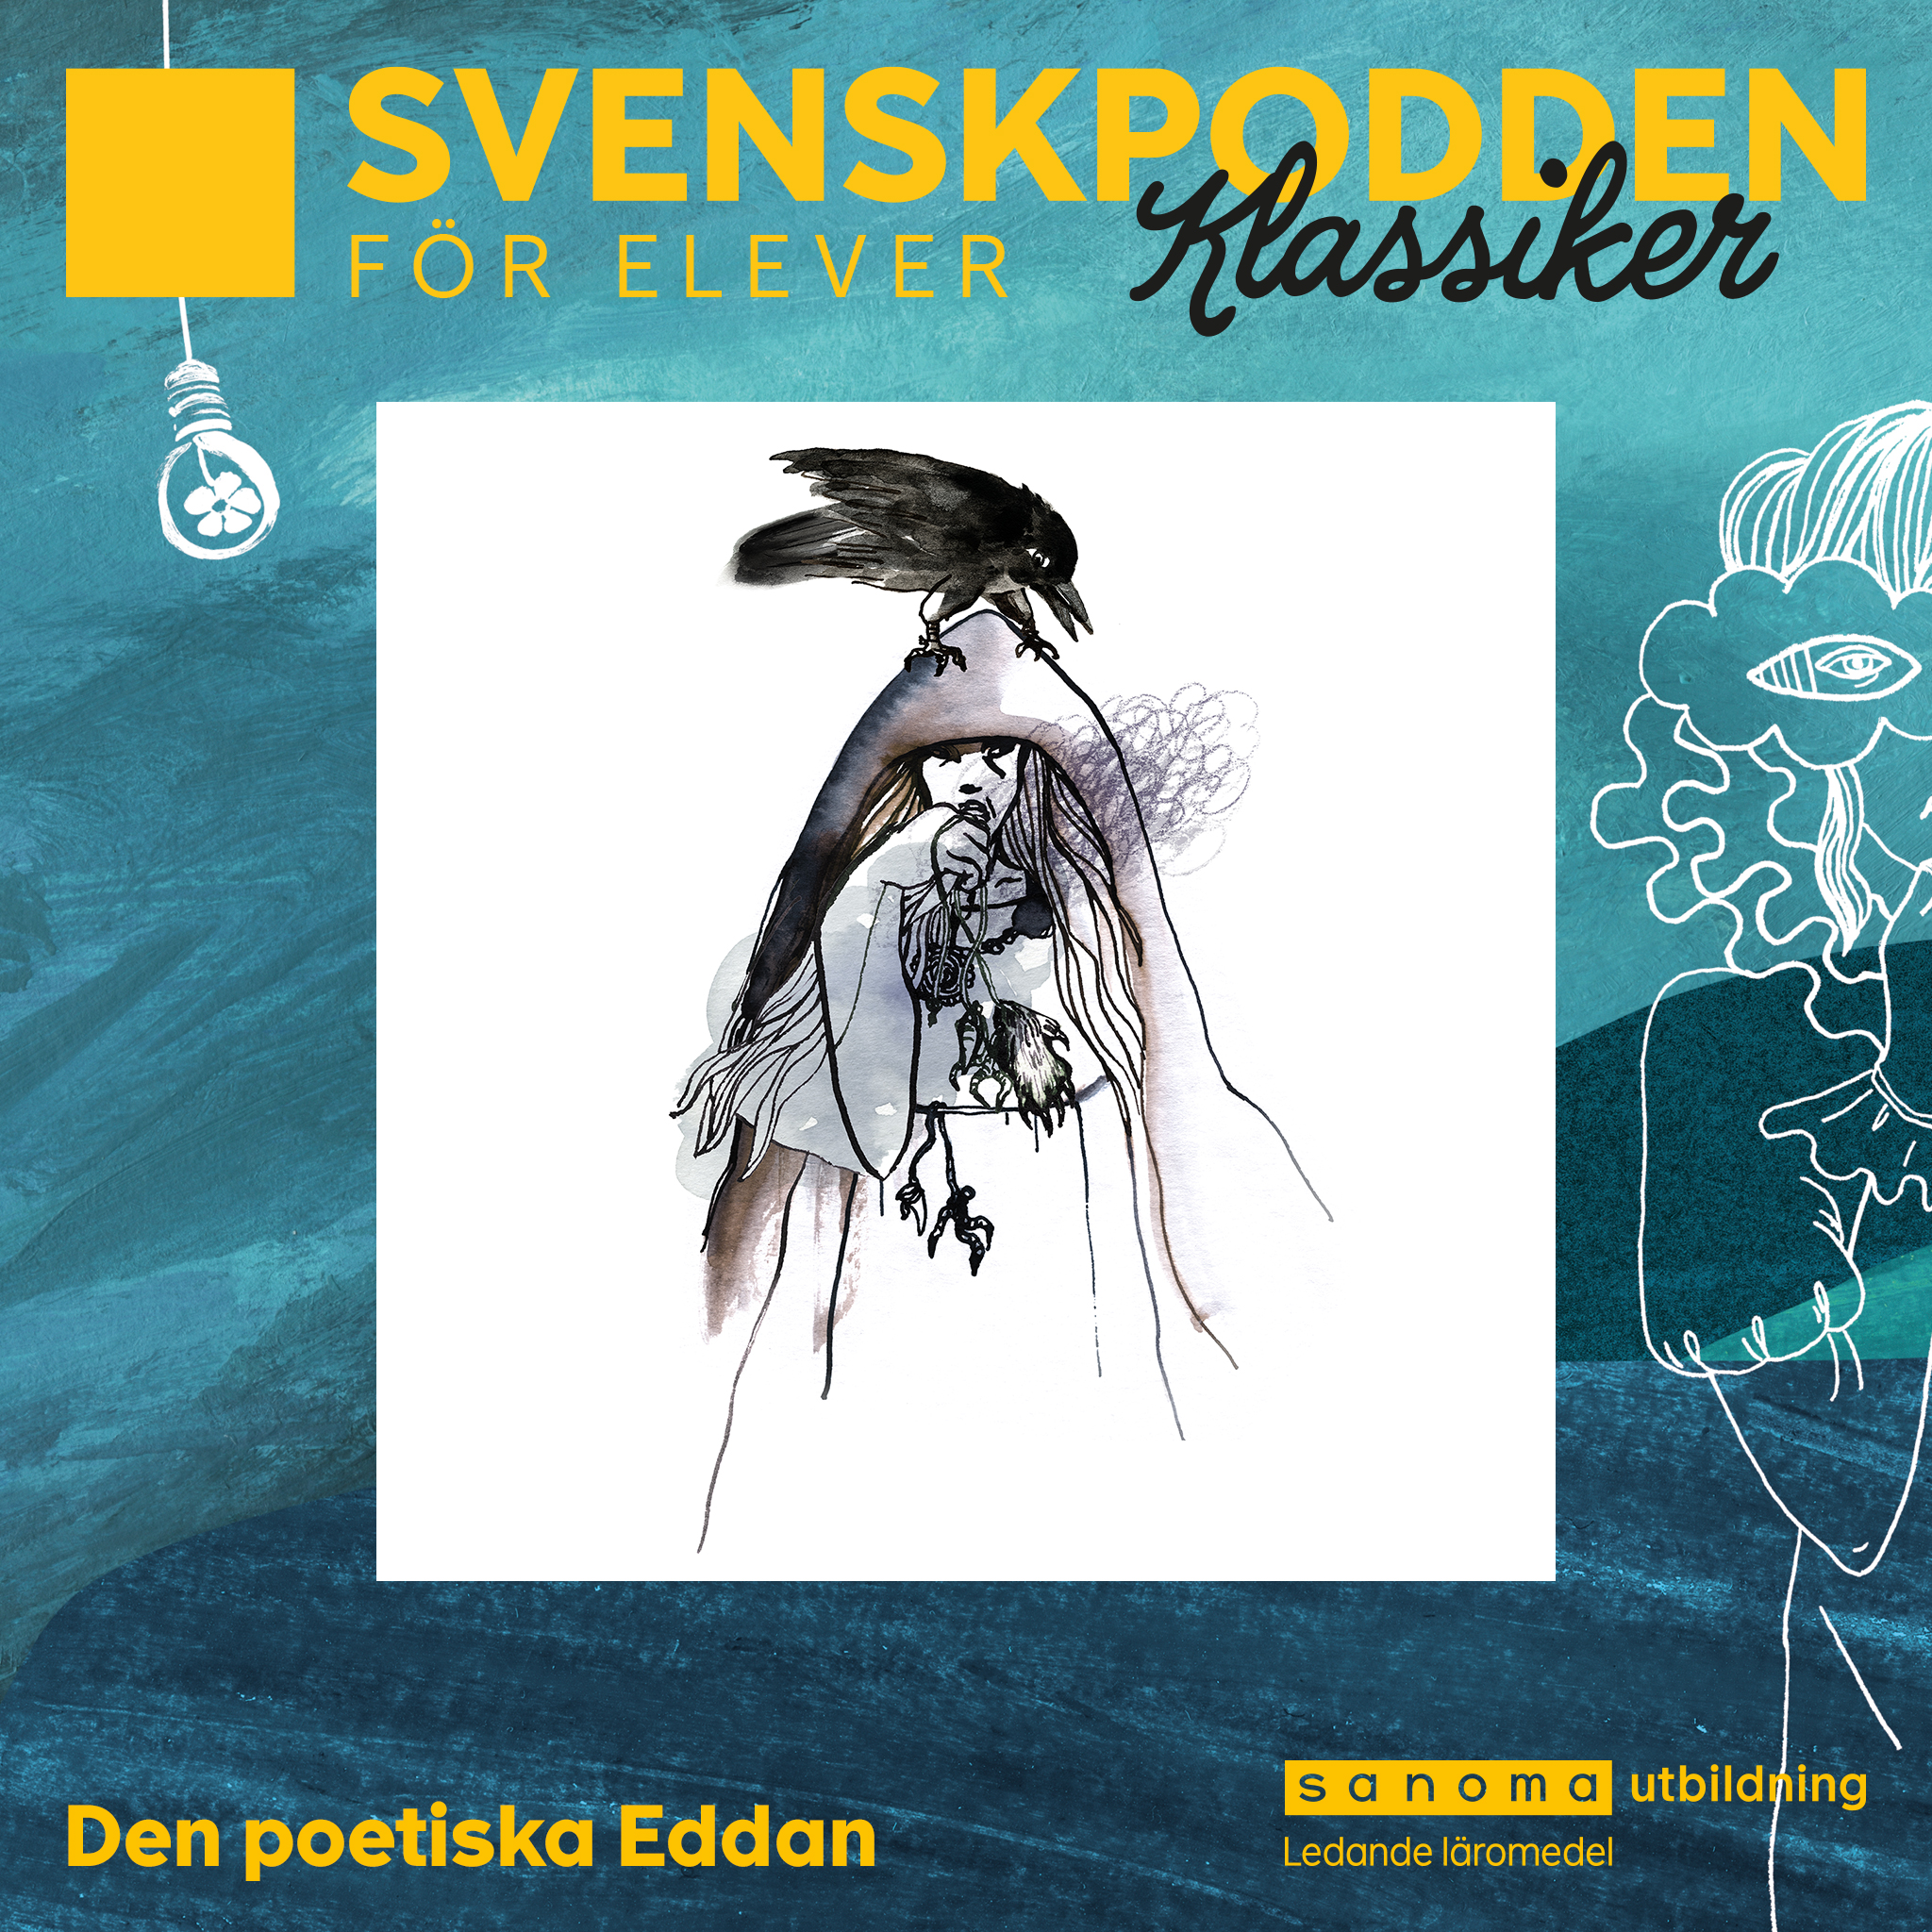 SvenskpoddenKlassiker-Podcaster-2.jpg